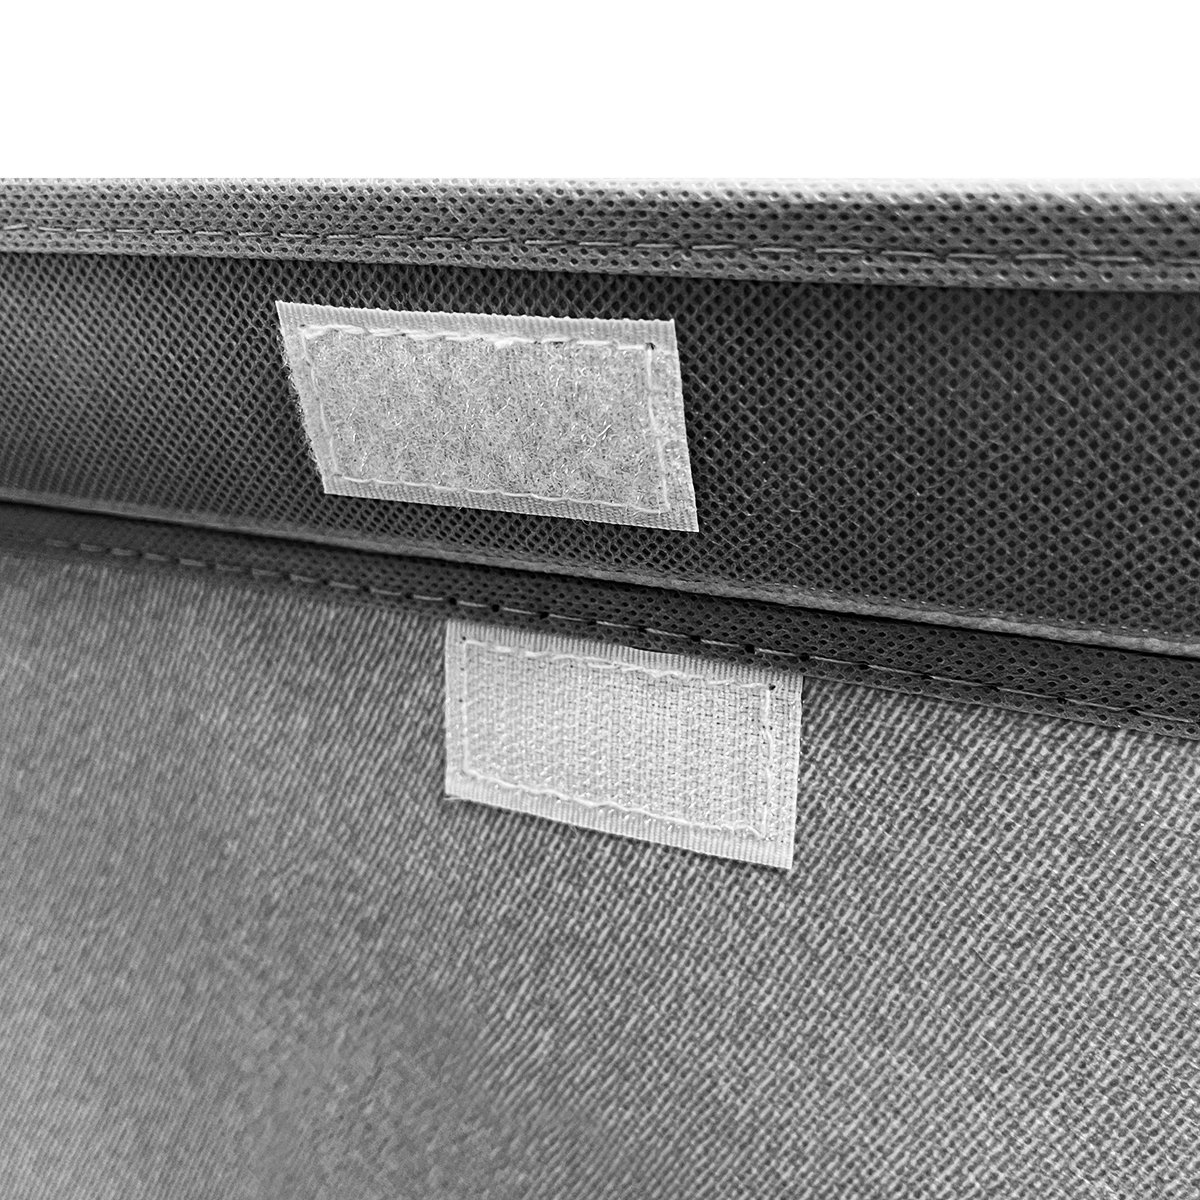 Ящик для зберігання з кришкою МВМ My Home M текстильний, 380x250x250 мм, сірий (TH-07 M GRAY) - фото 2